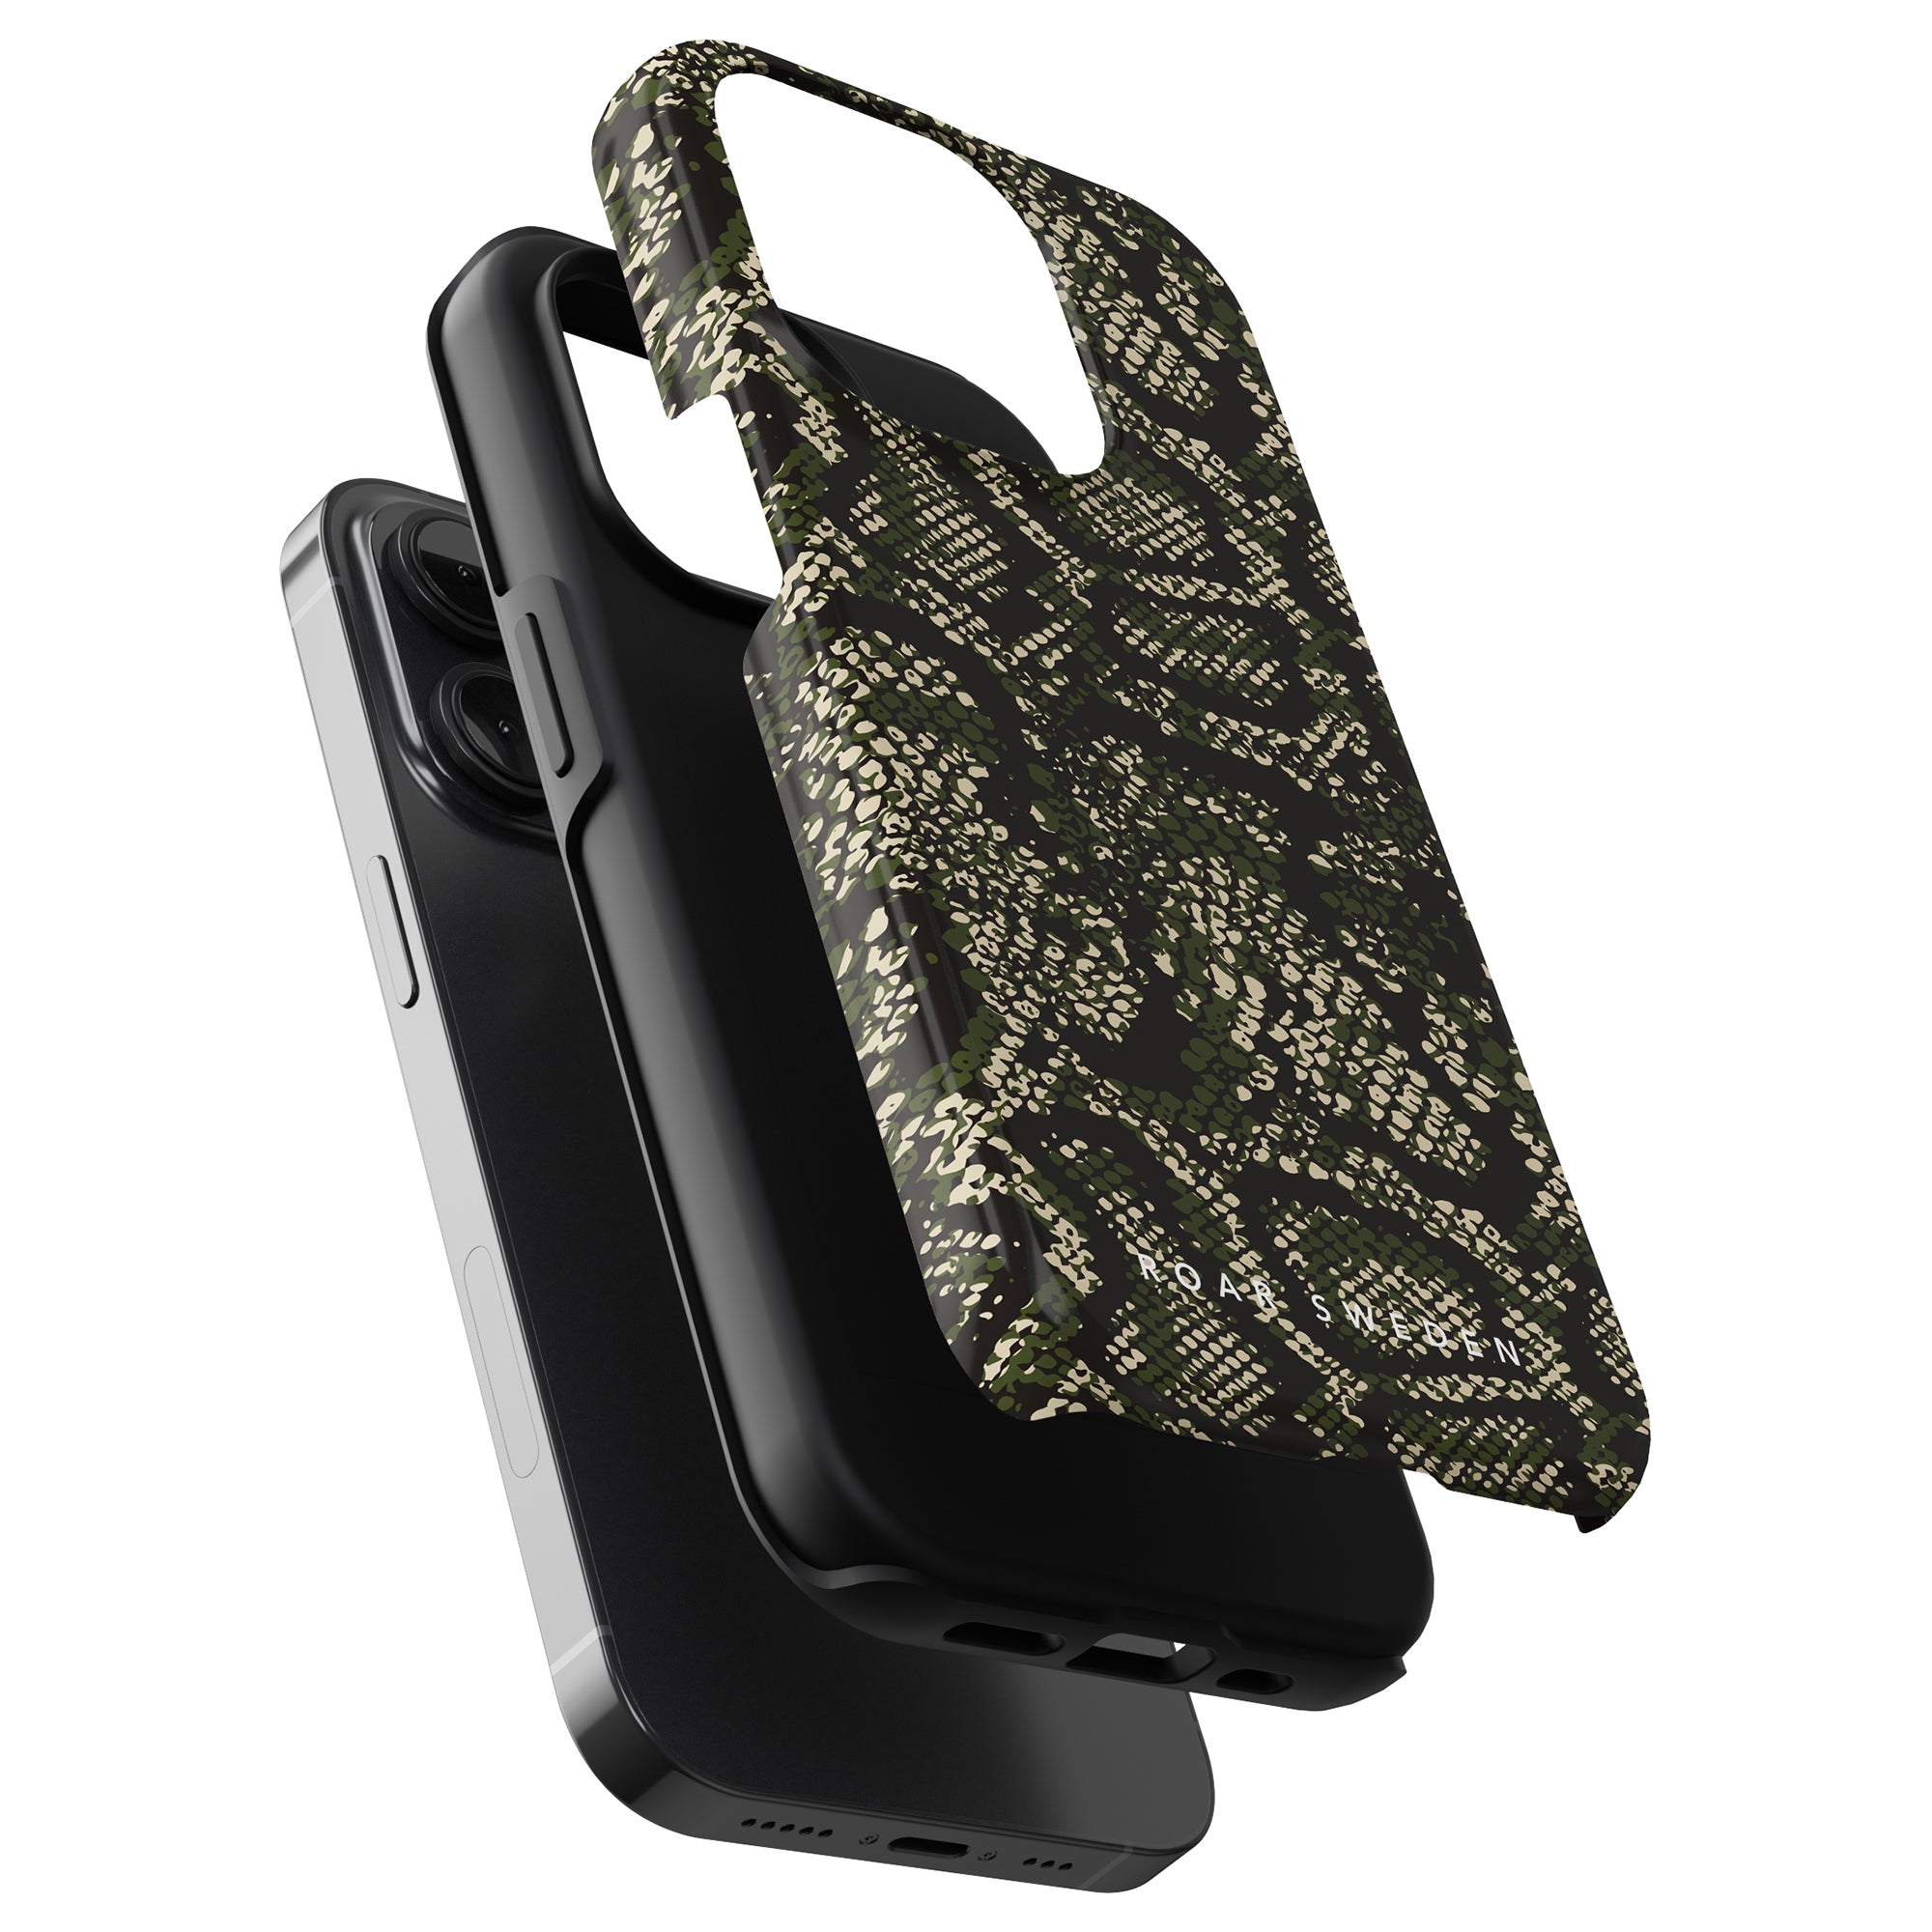 A Camo Snakes - Tufft fodral i svart och grönt pythonmönster för iPhone 11 Pro.